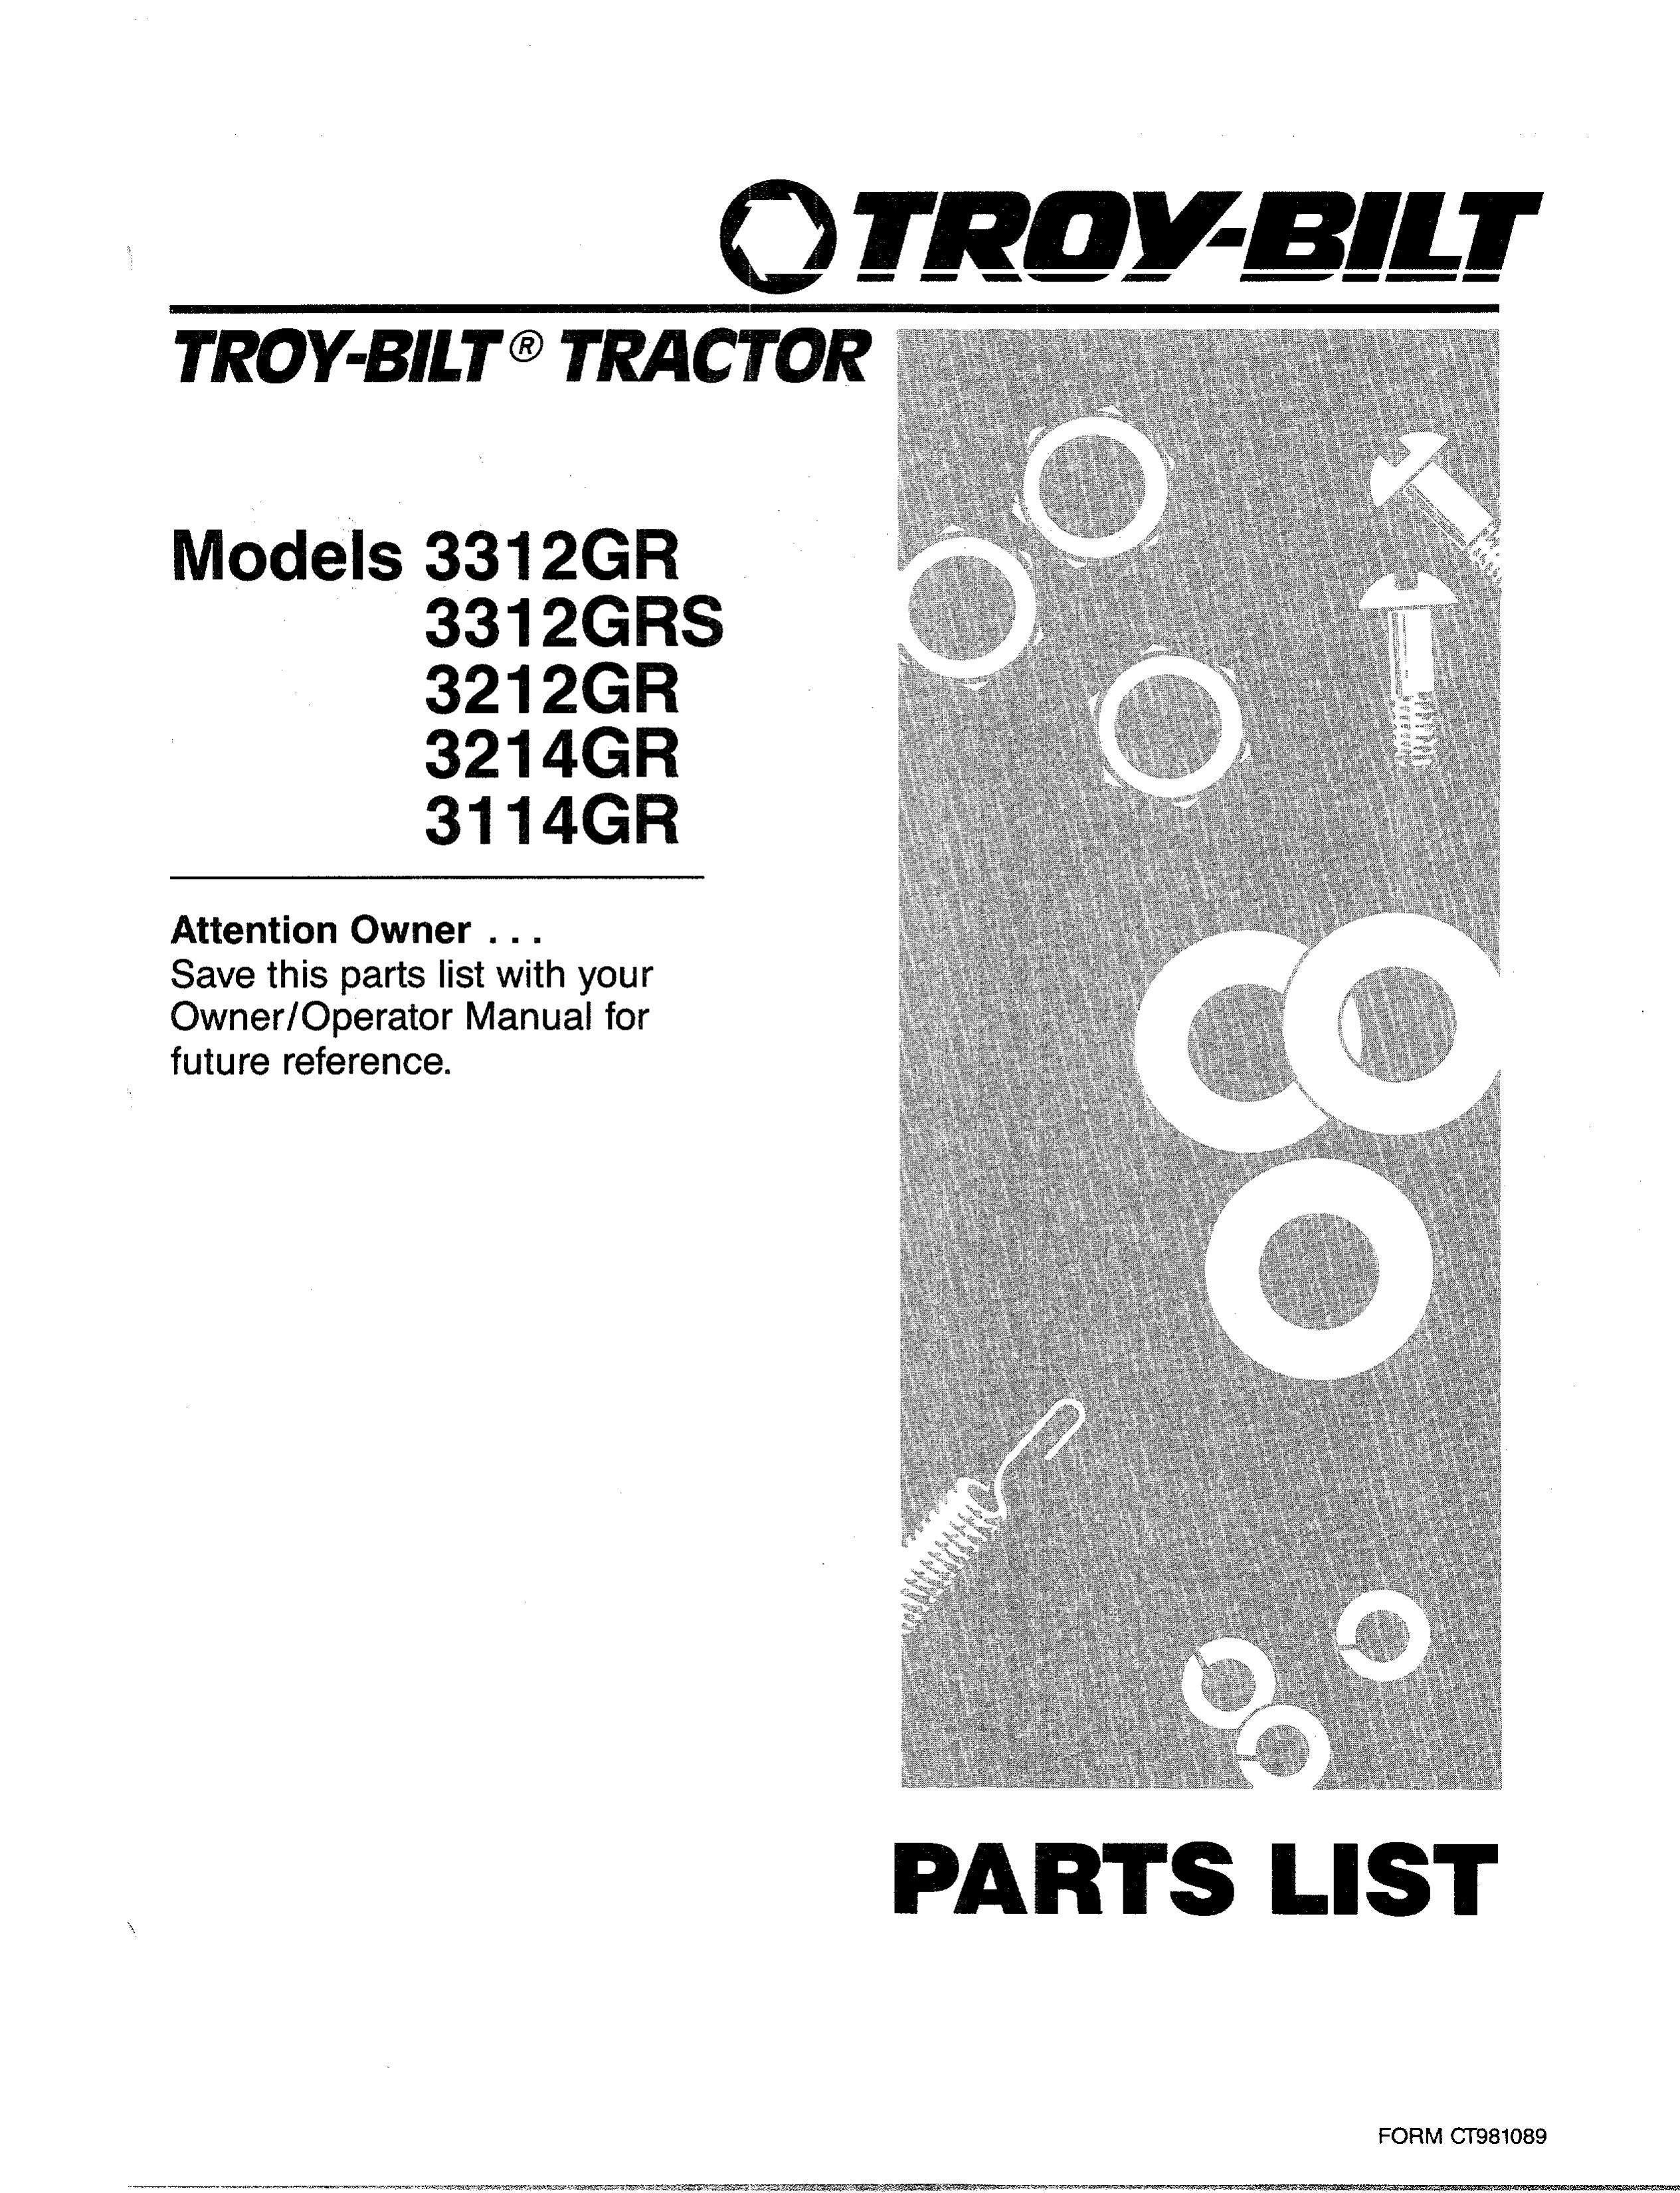 Troy-Bilt 3312GRS Lawn Mower User Manual